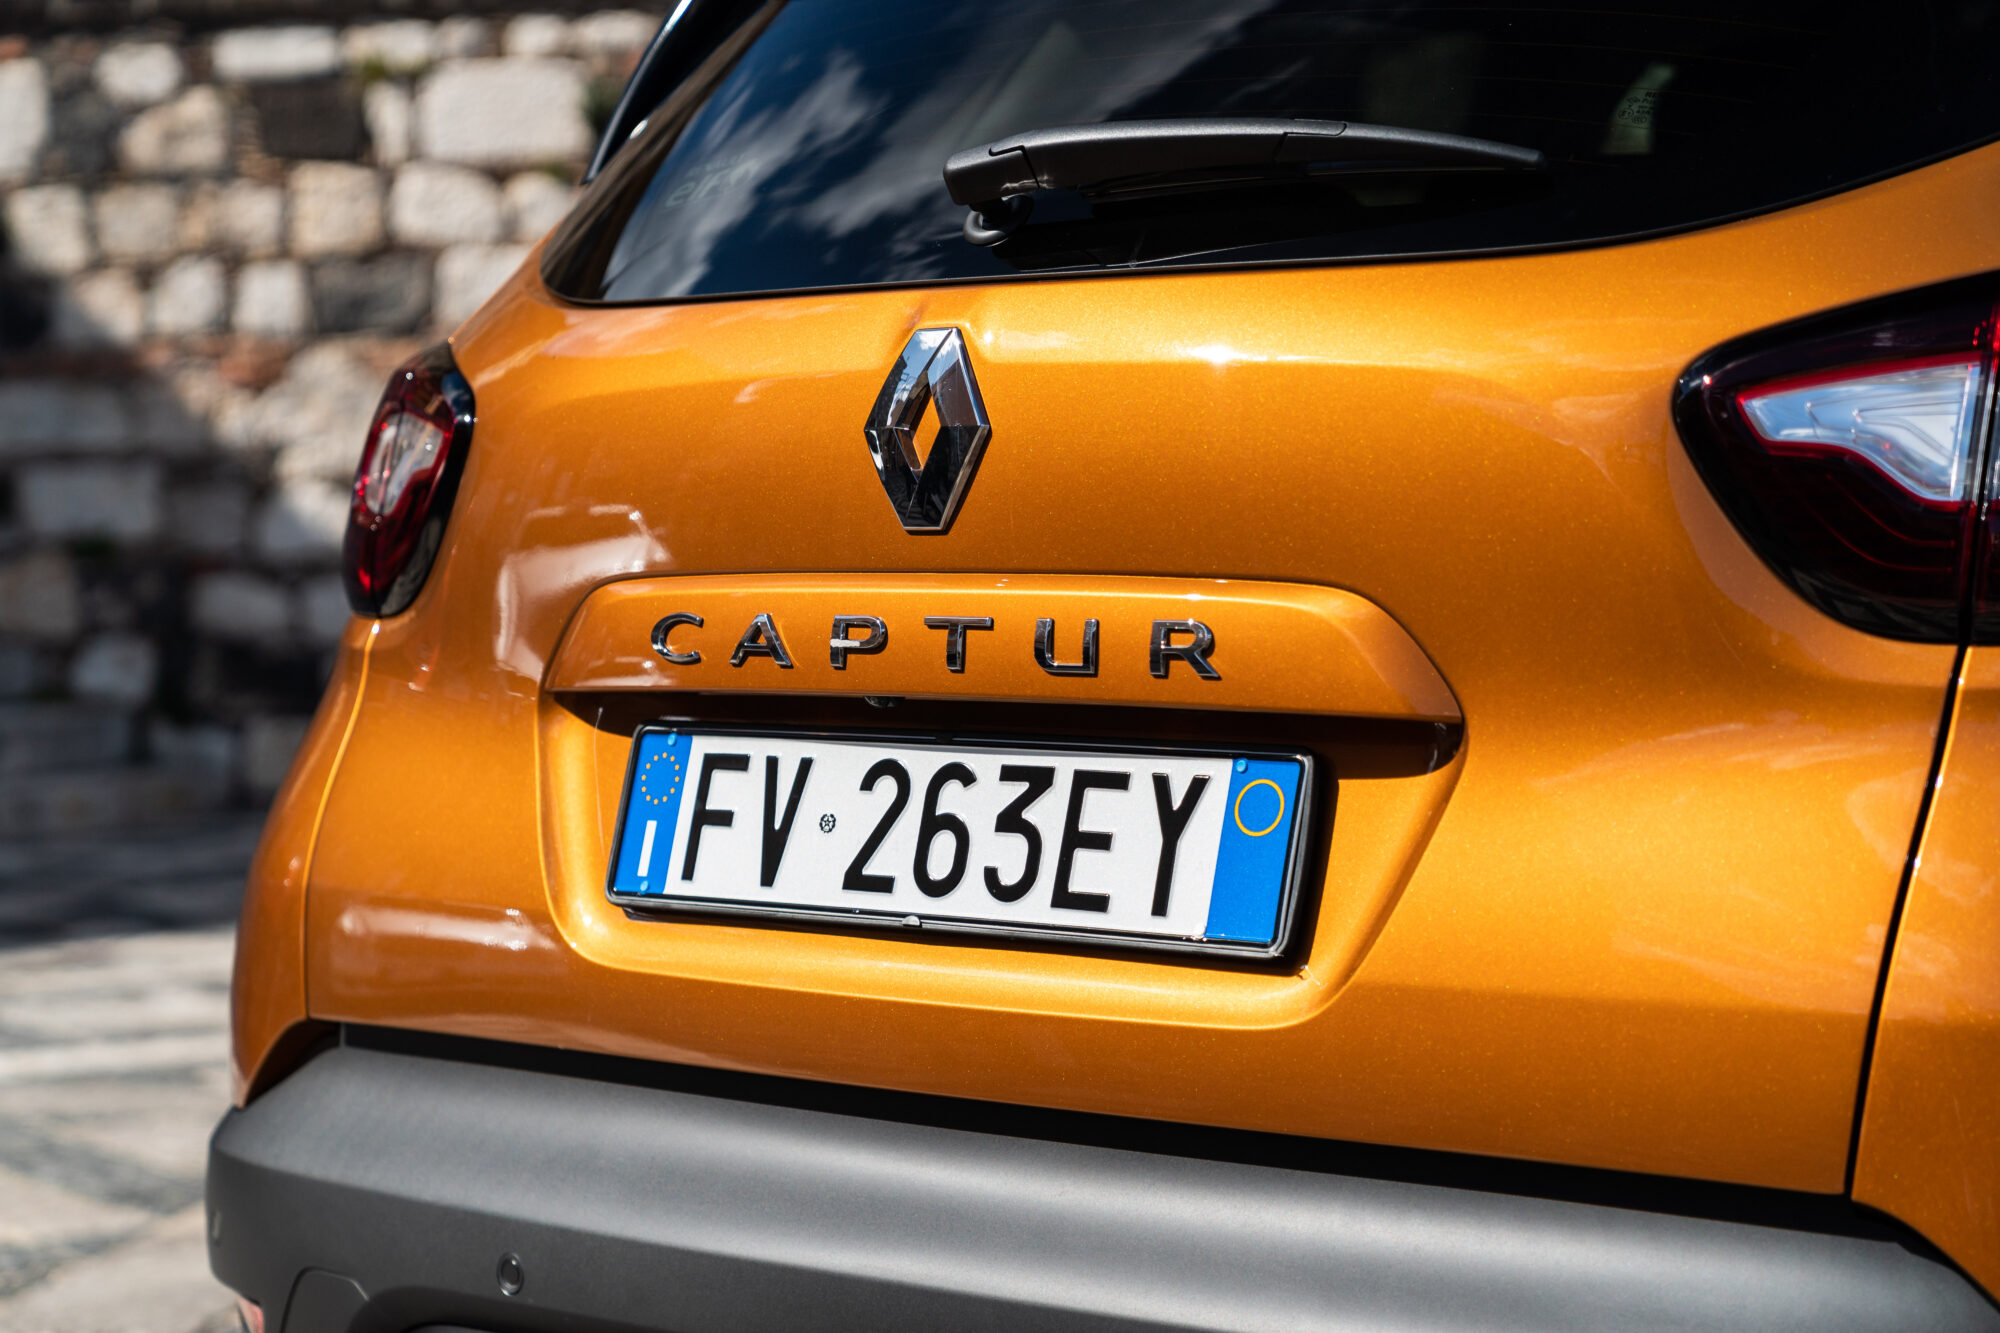 Sempre più innovazione per Renault CAPTUR - Nuova SPORT EDITION MY19 e motore 1.3 TCe FAP